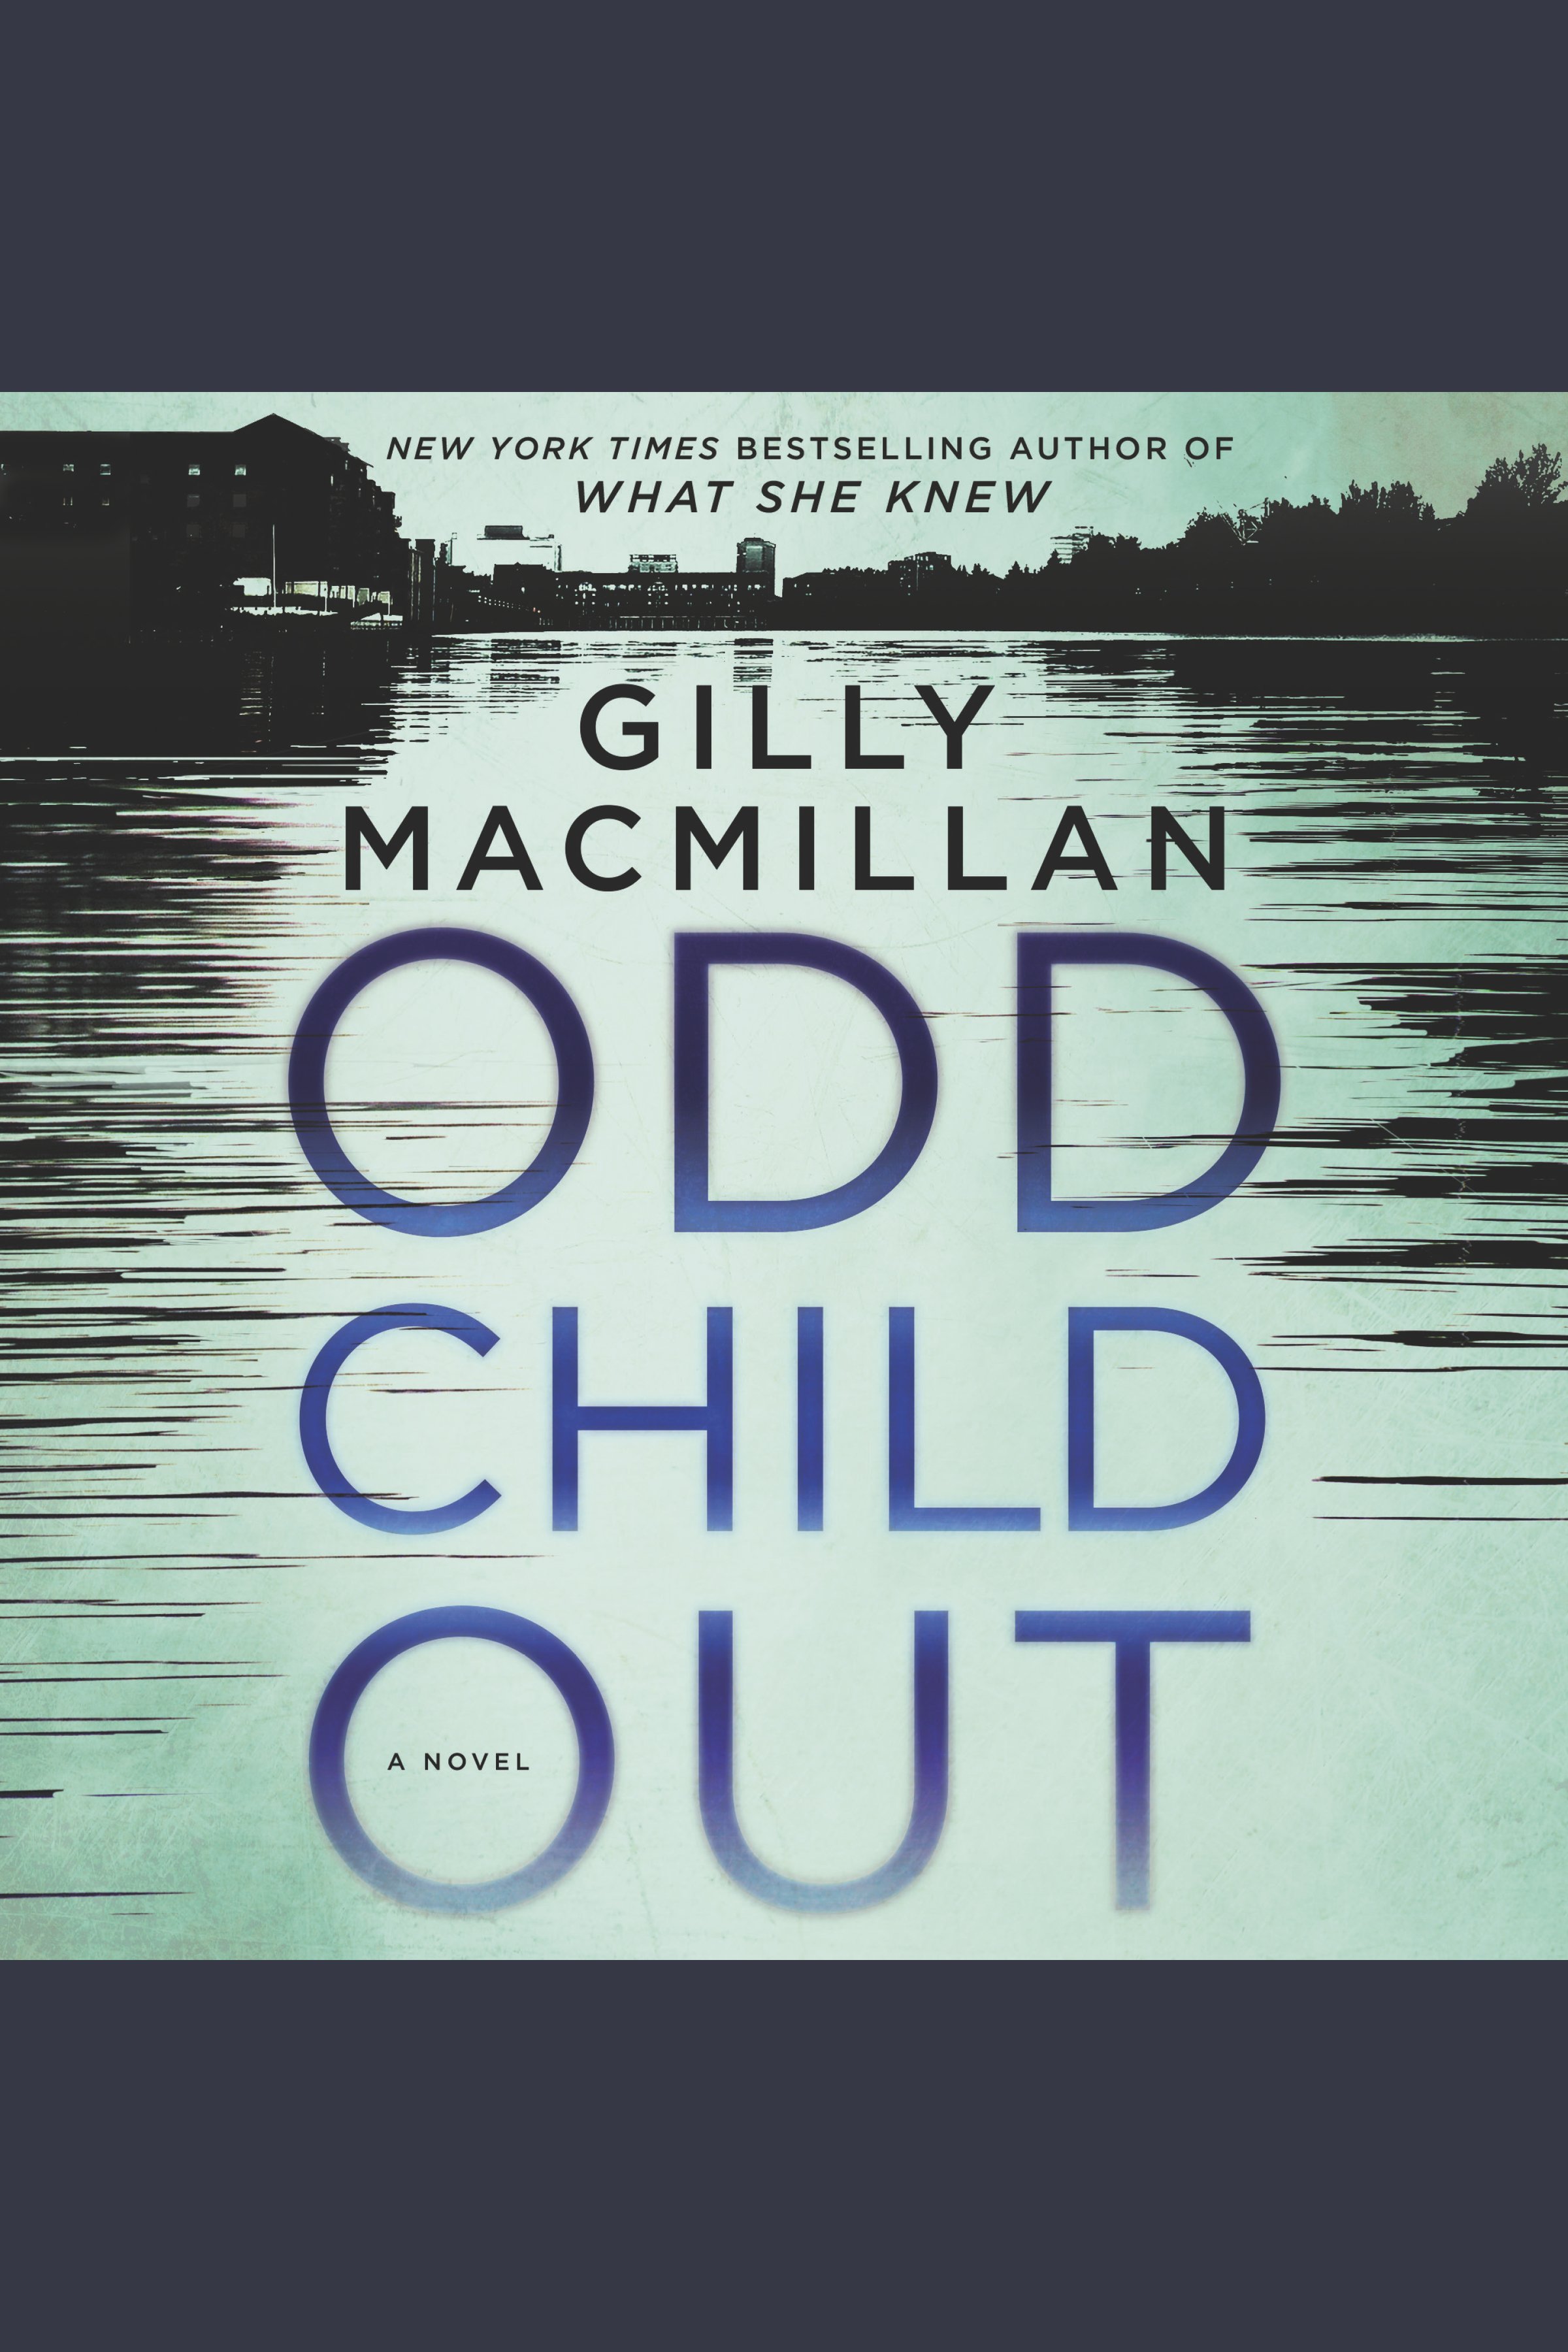 Image de couverture de Odd Child Out [electronic resource] : A Novel